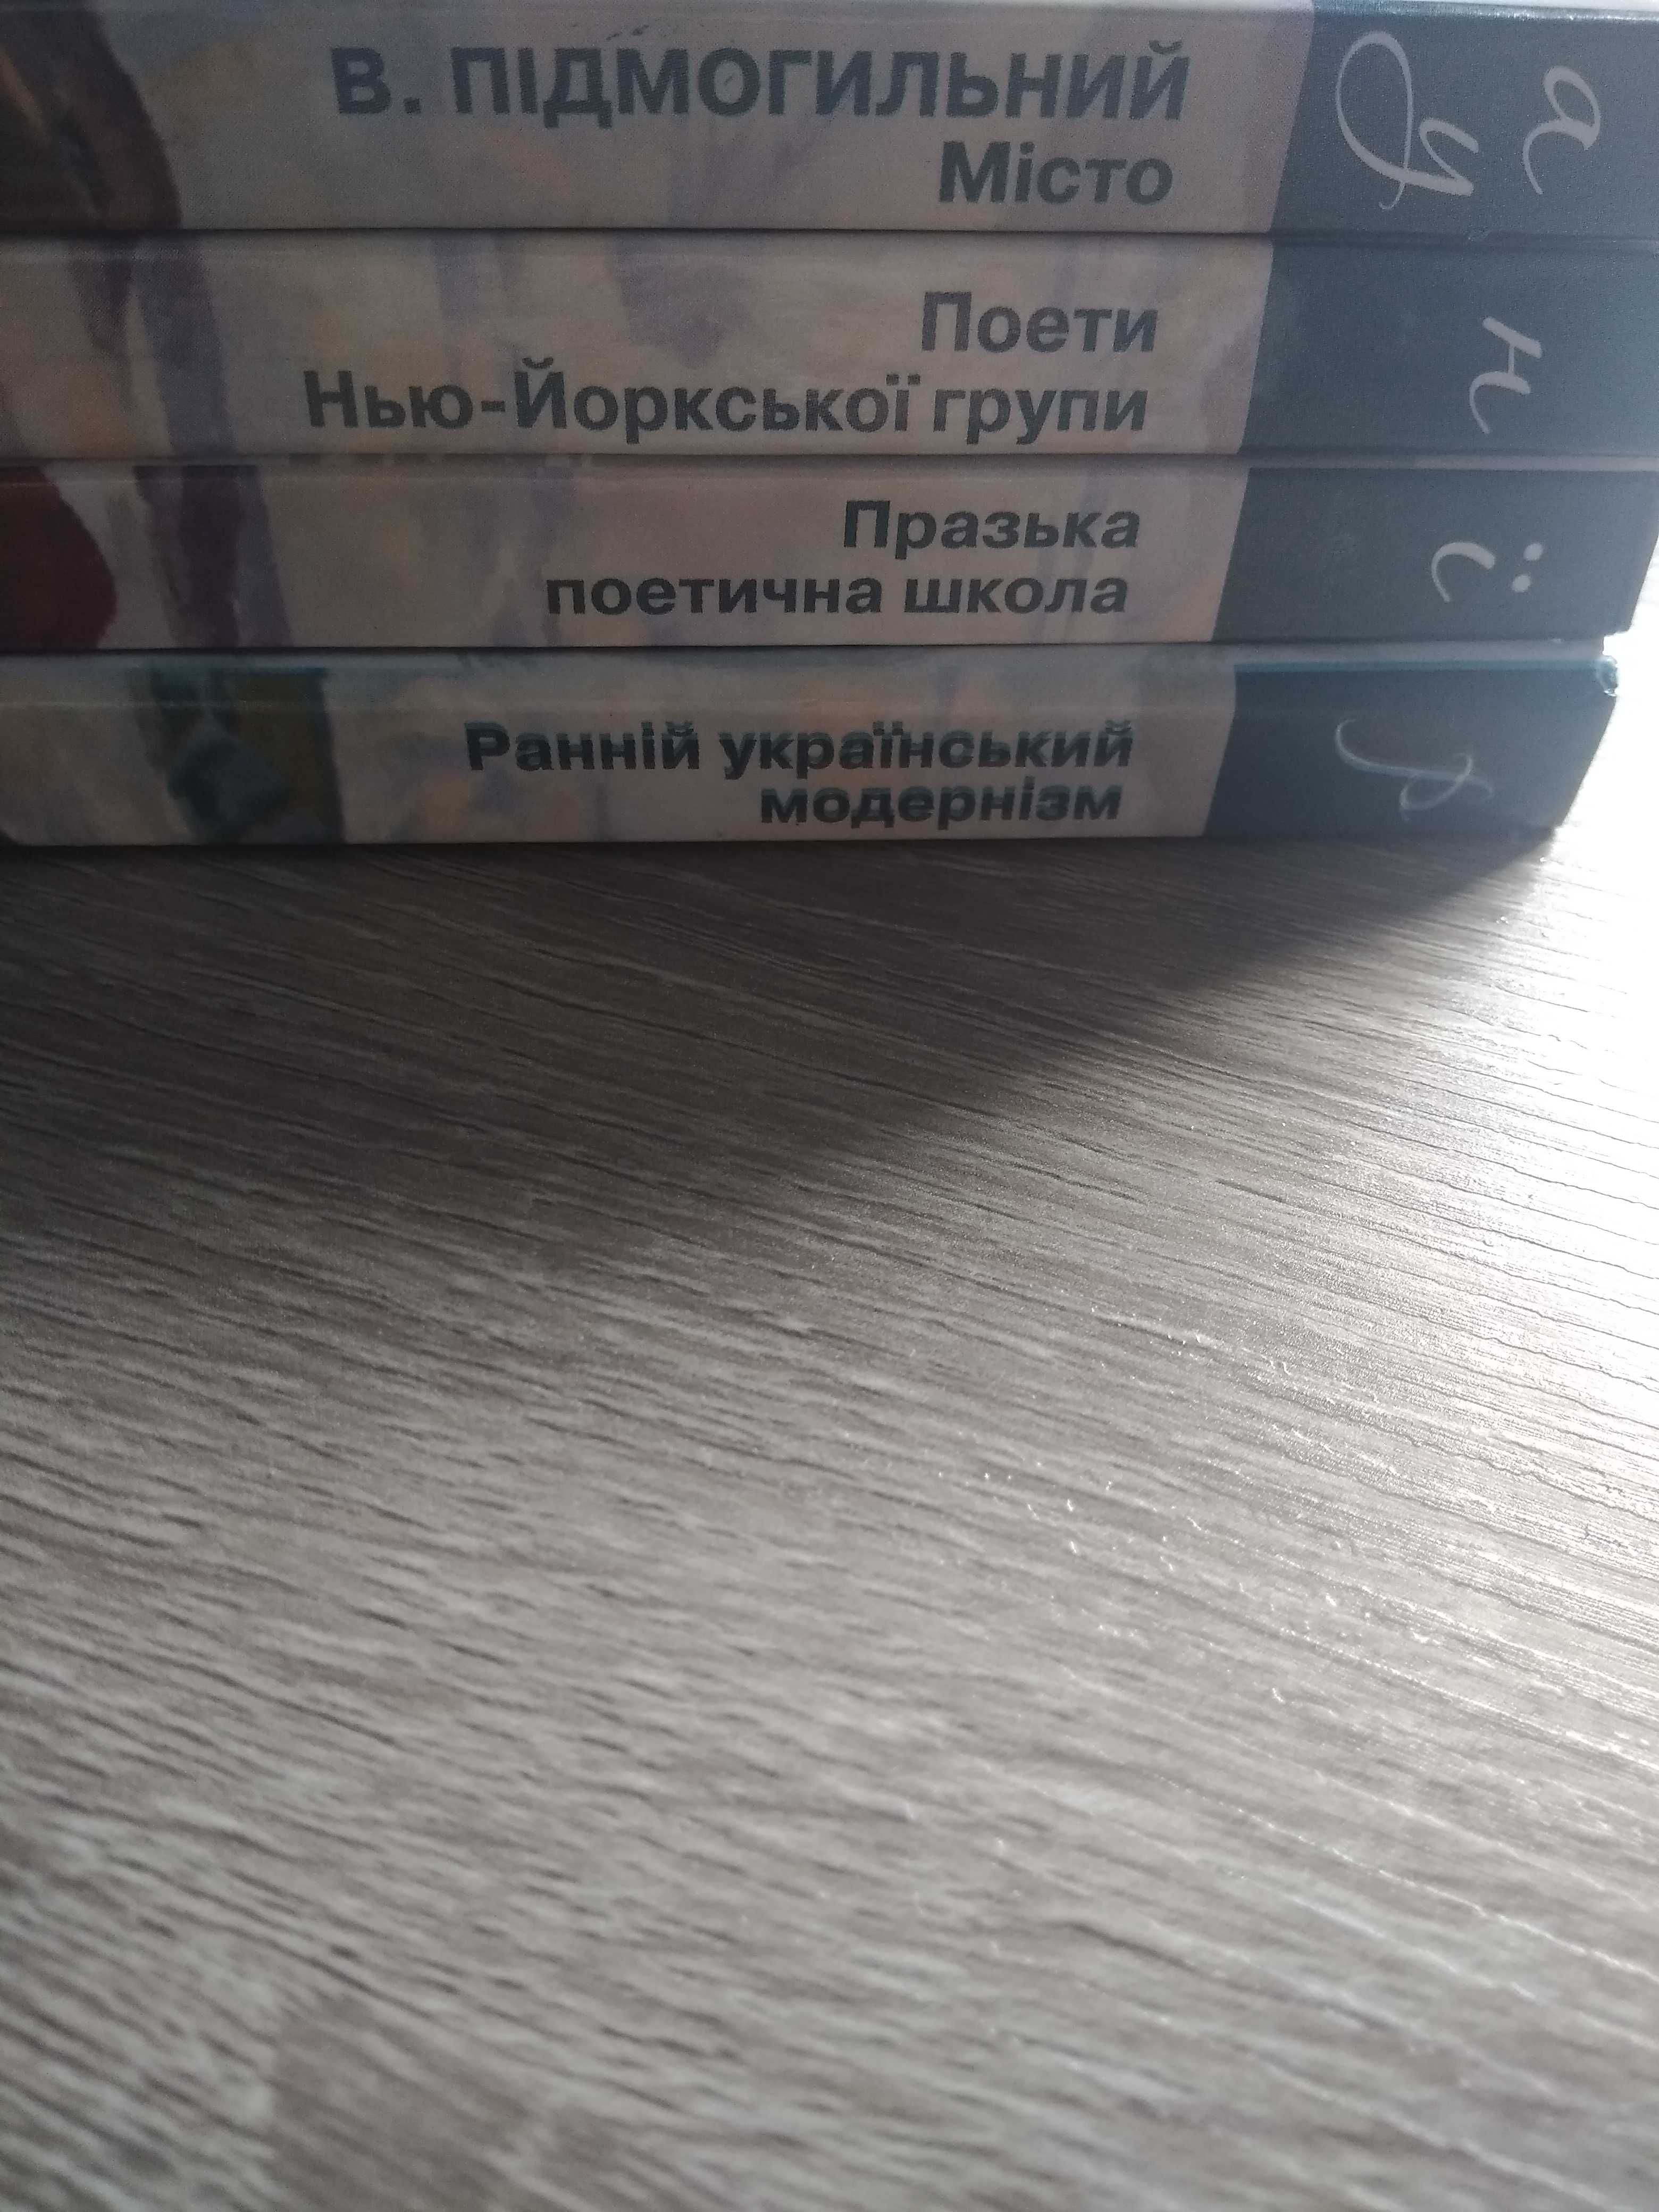 Книги серії "Українська муза"(Нью-Йоркська група, Підмогильний та ін.)